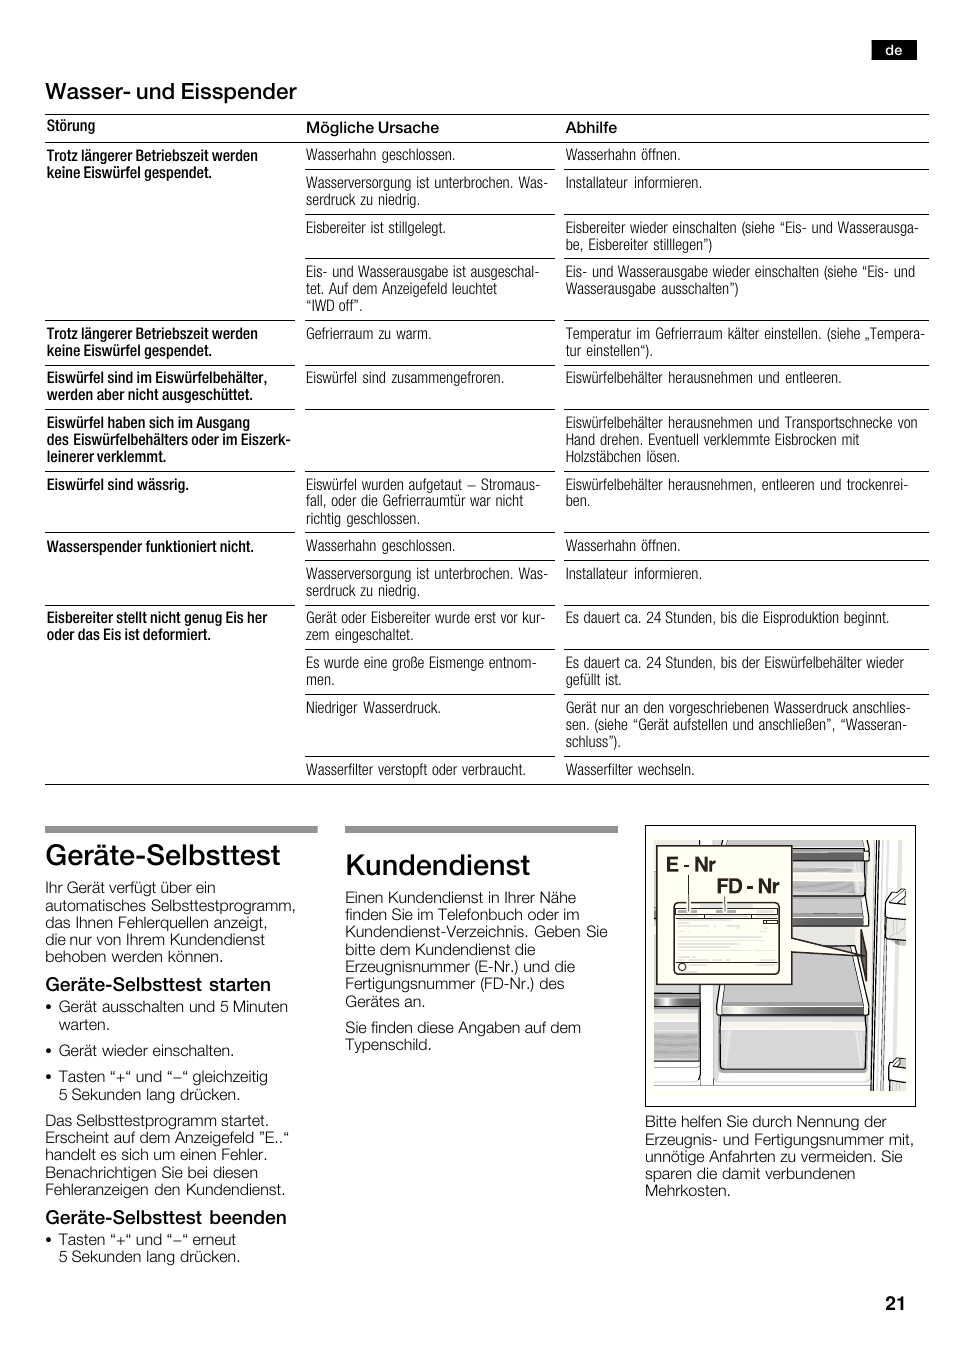 Gerätećselbsttest, Kundendienst, Wasserć und eisspender | Neff K5920D1 User  Manual | Page 21 / 98